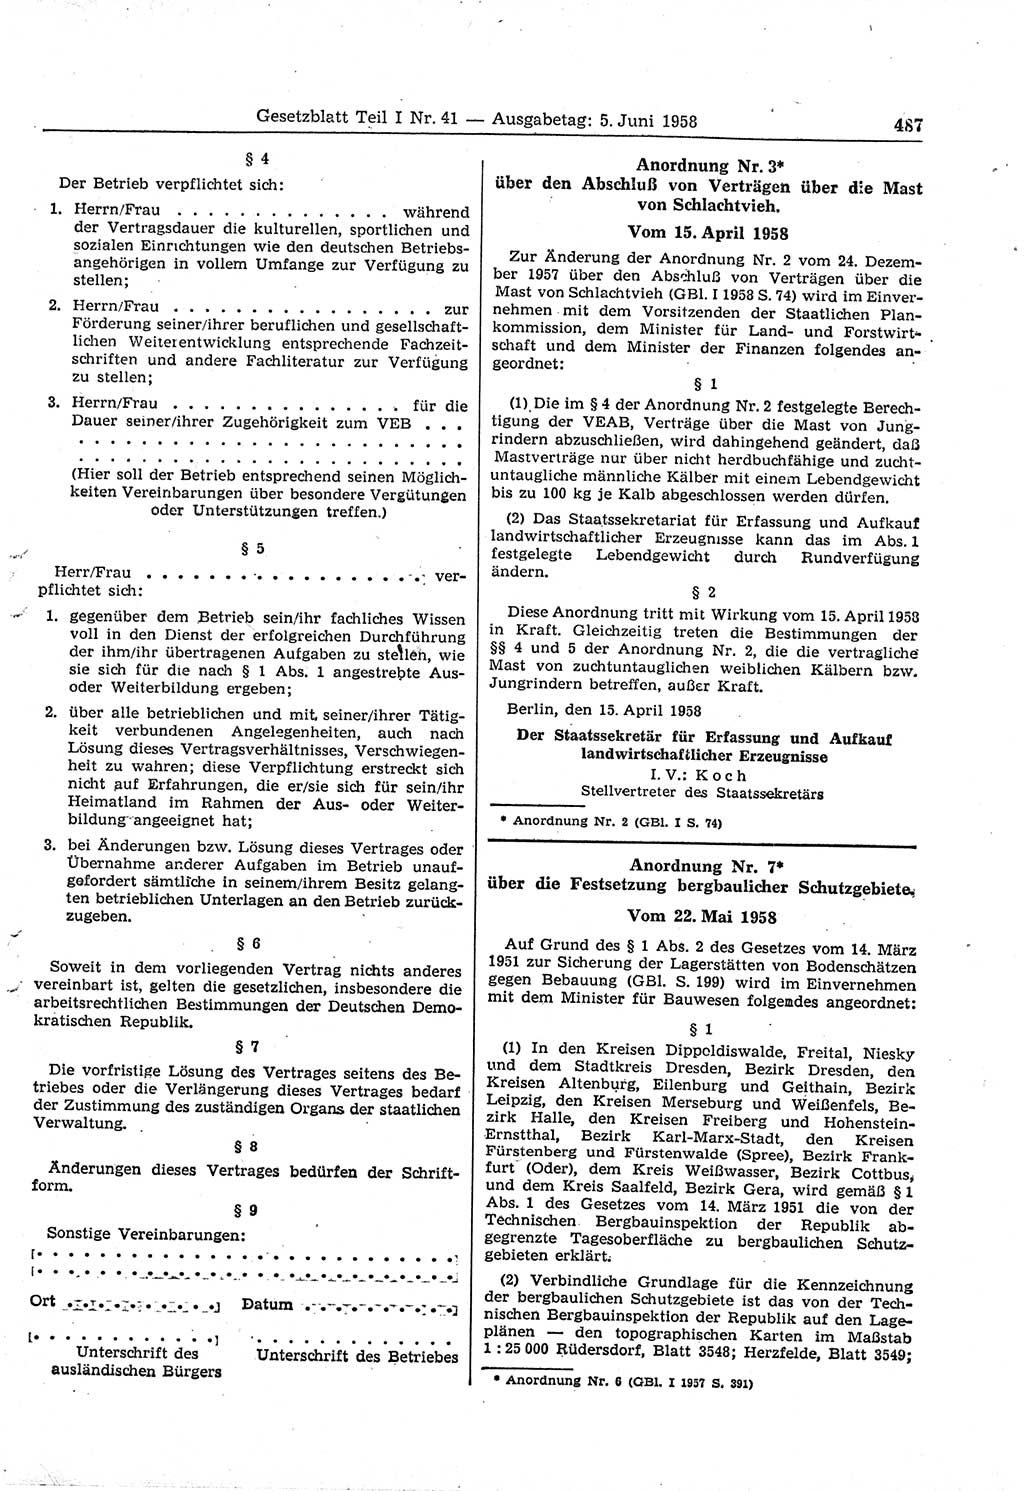 Gesetzblatt (GBl.) der Deutschen Demokratischen Republik (DDR) Teil Ⅰ 1958, Seite 487 (GBl. DDR Ⅰ 1958, S. 487)